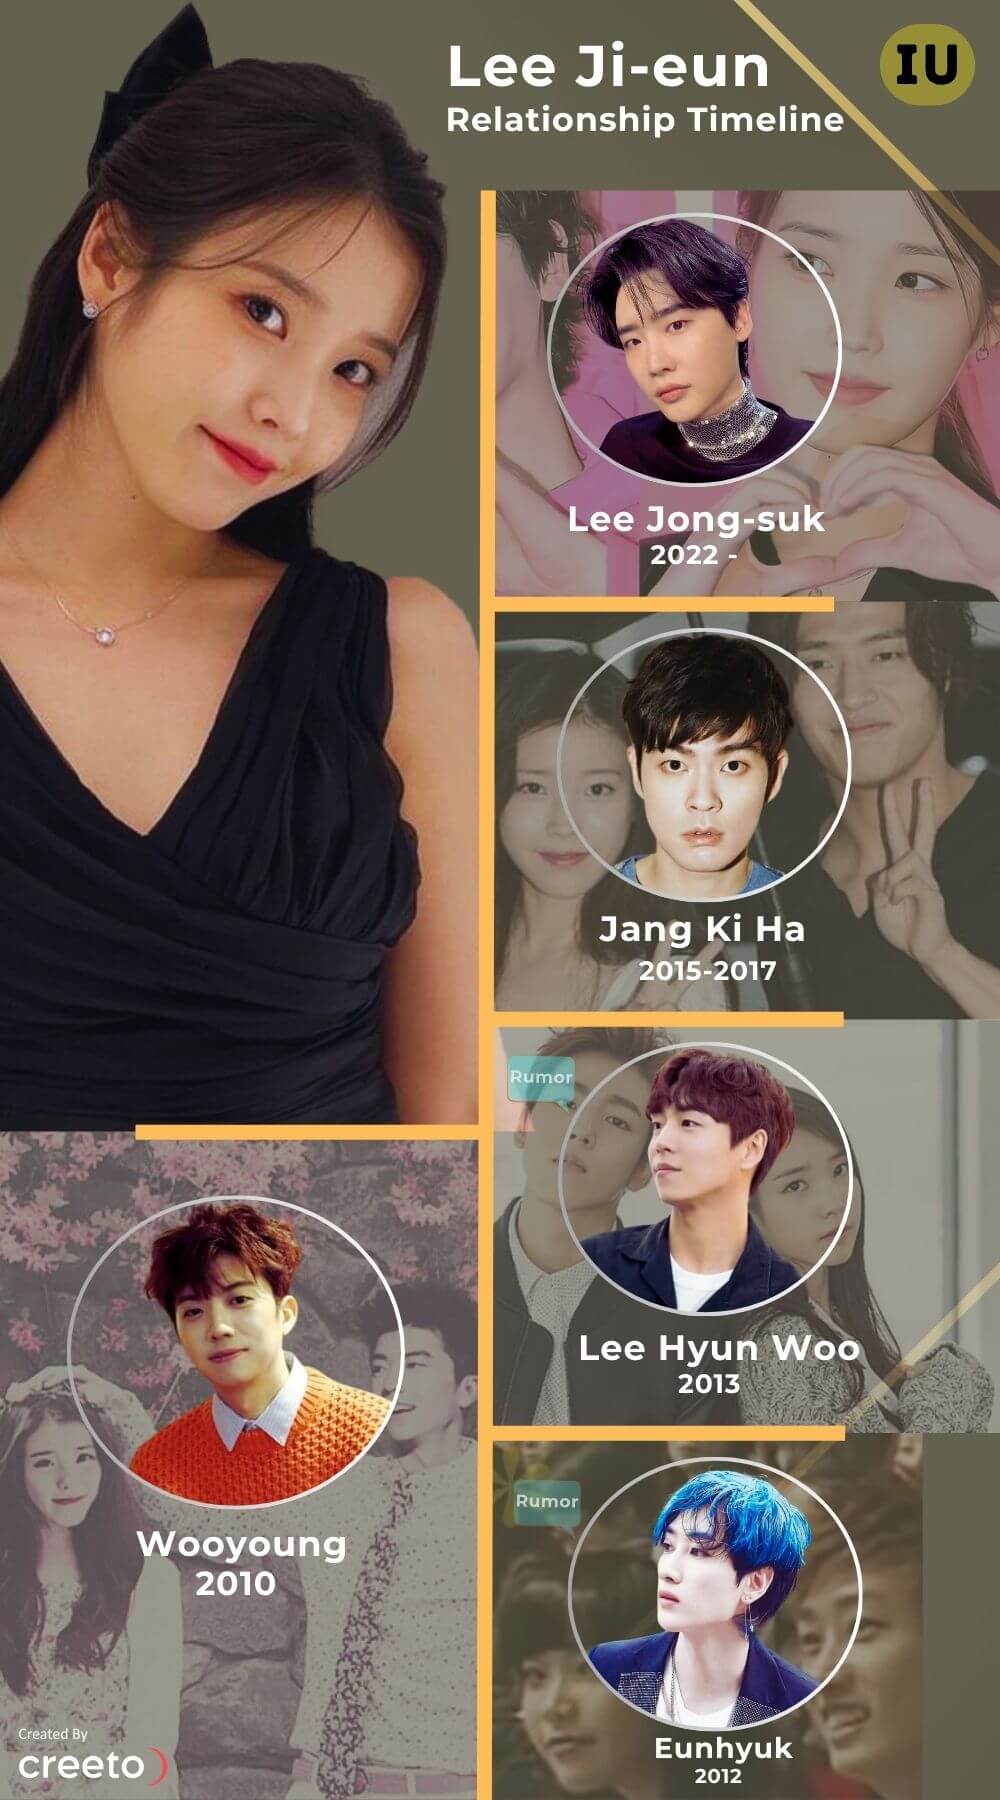 Lee Ji-eun (IU) dating history